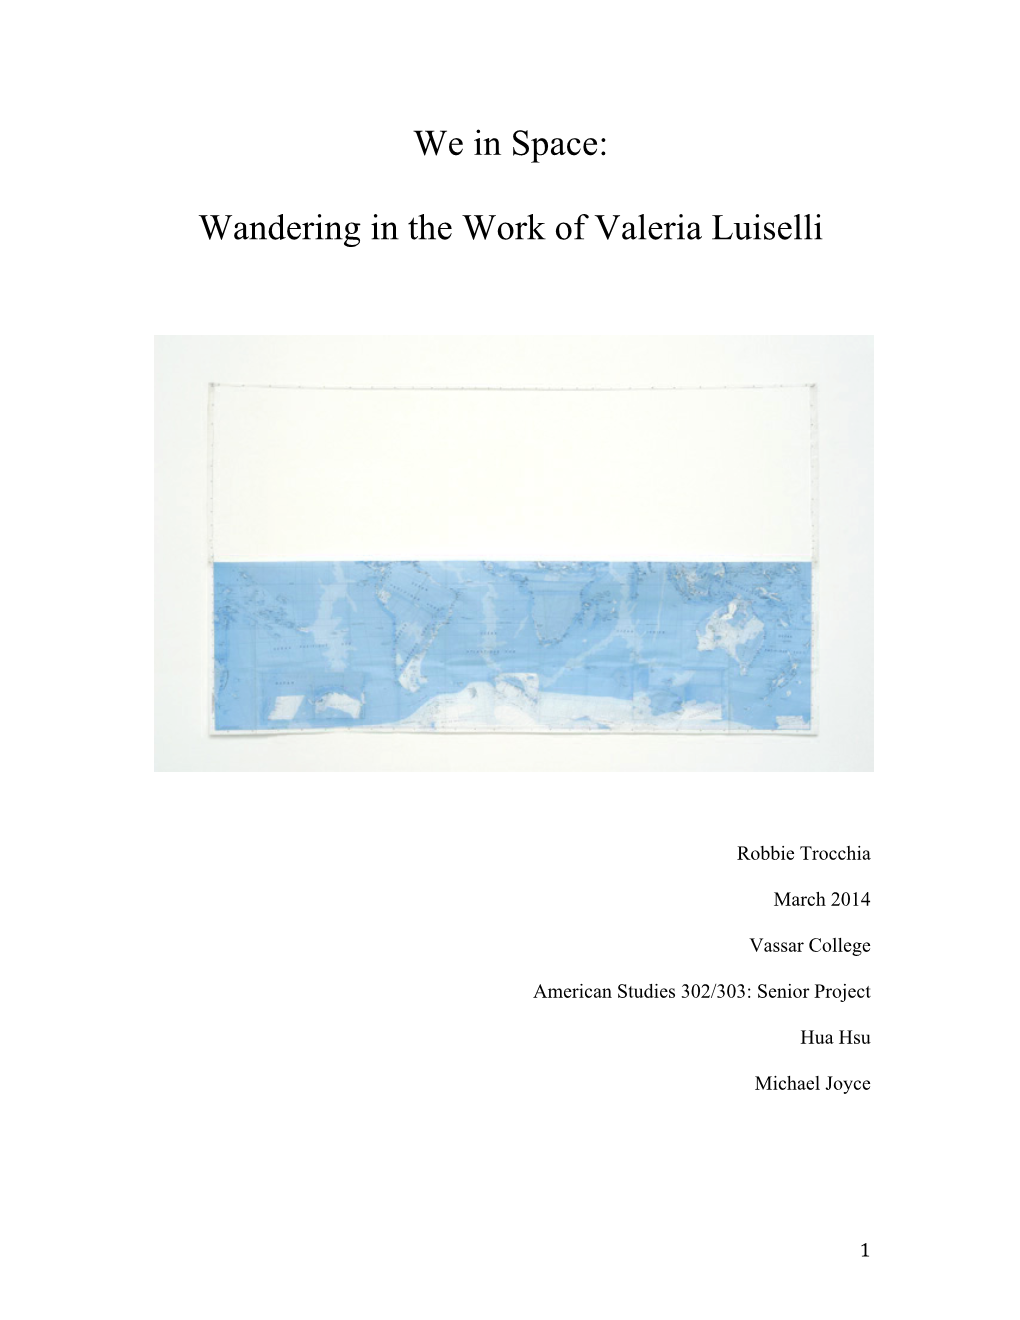 Wandering in the Work of Valeria Luiselli